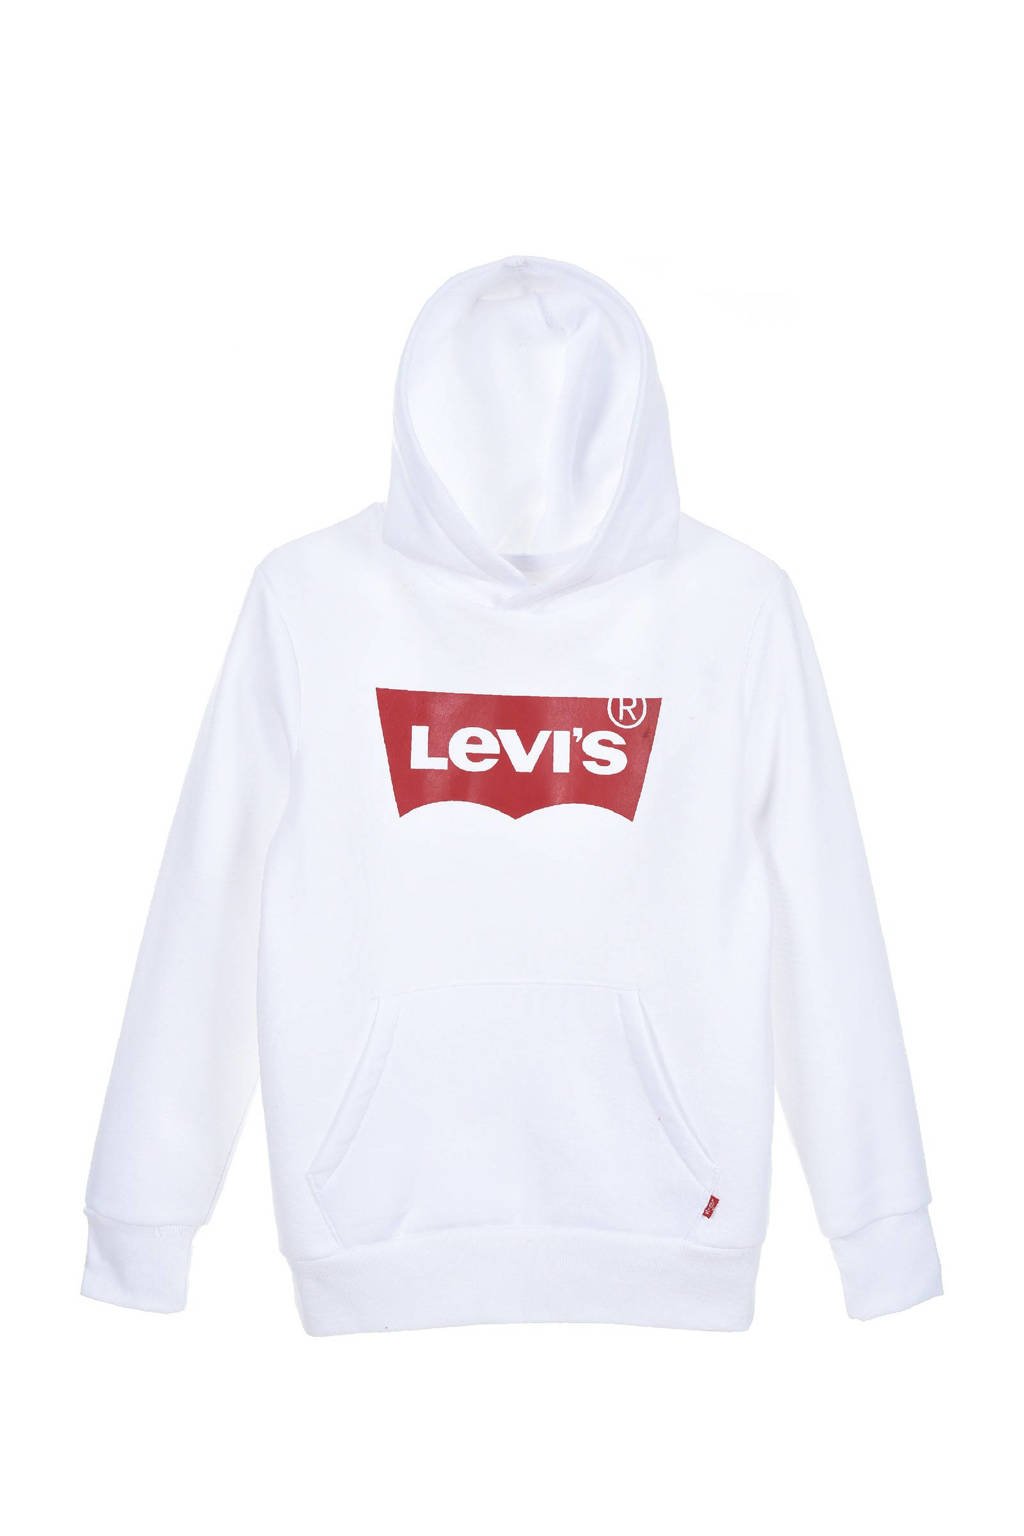 Levi's Kids hoodie Batwing met logo wit